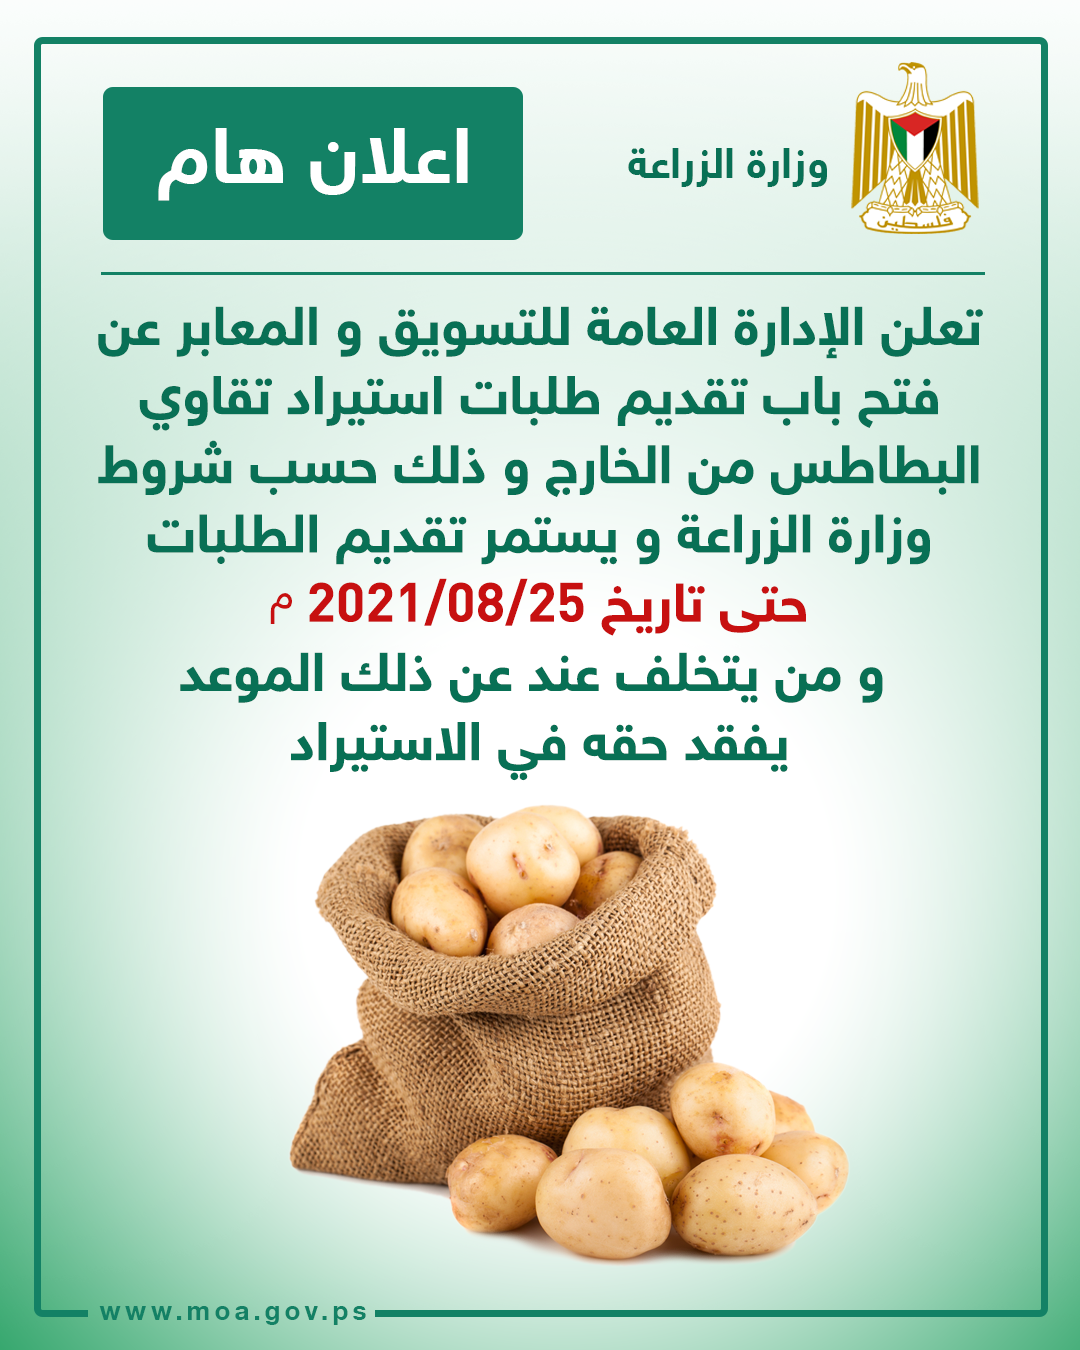 الزراعة بغزة تُصدر إعلاناً مهماً حول استيراد "تقاوي البطاطس" من الخارج